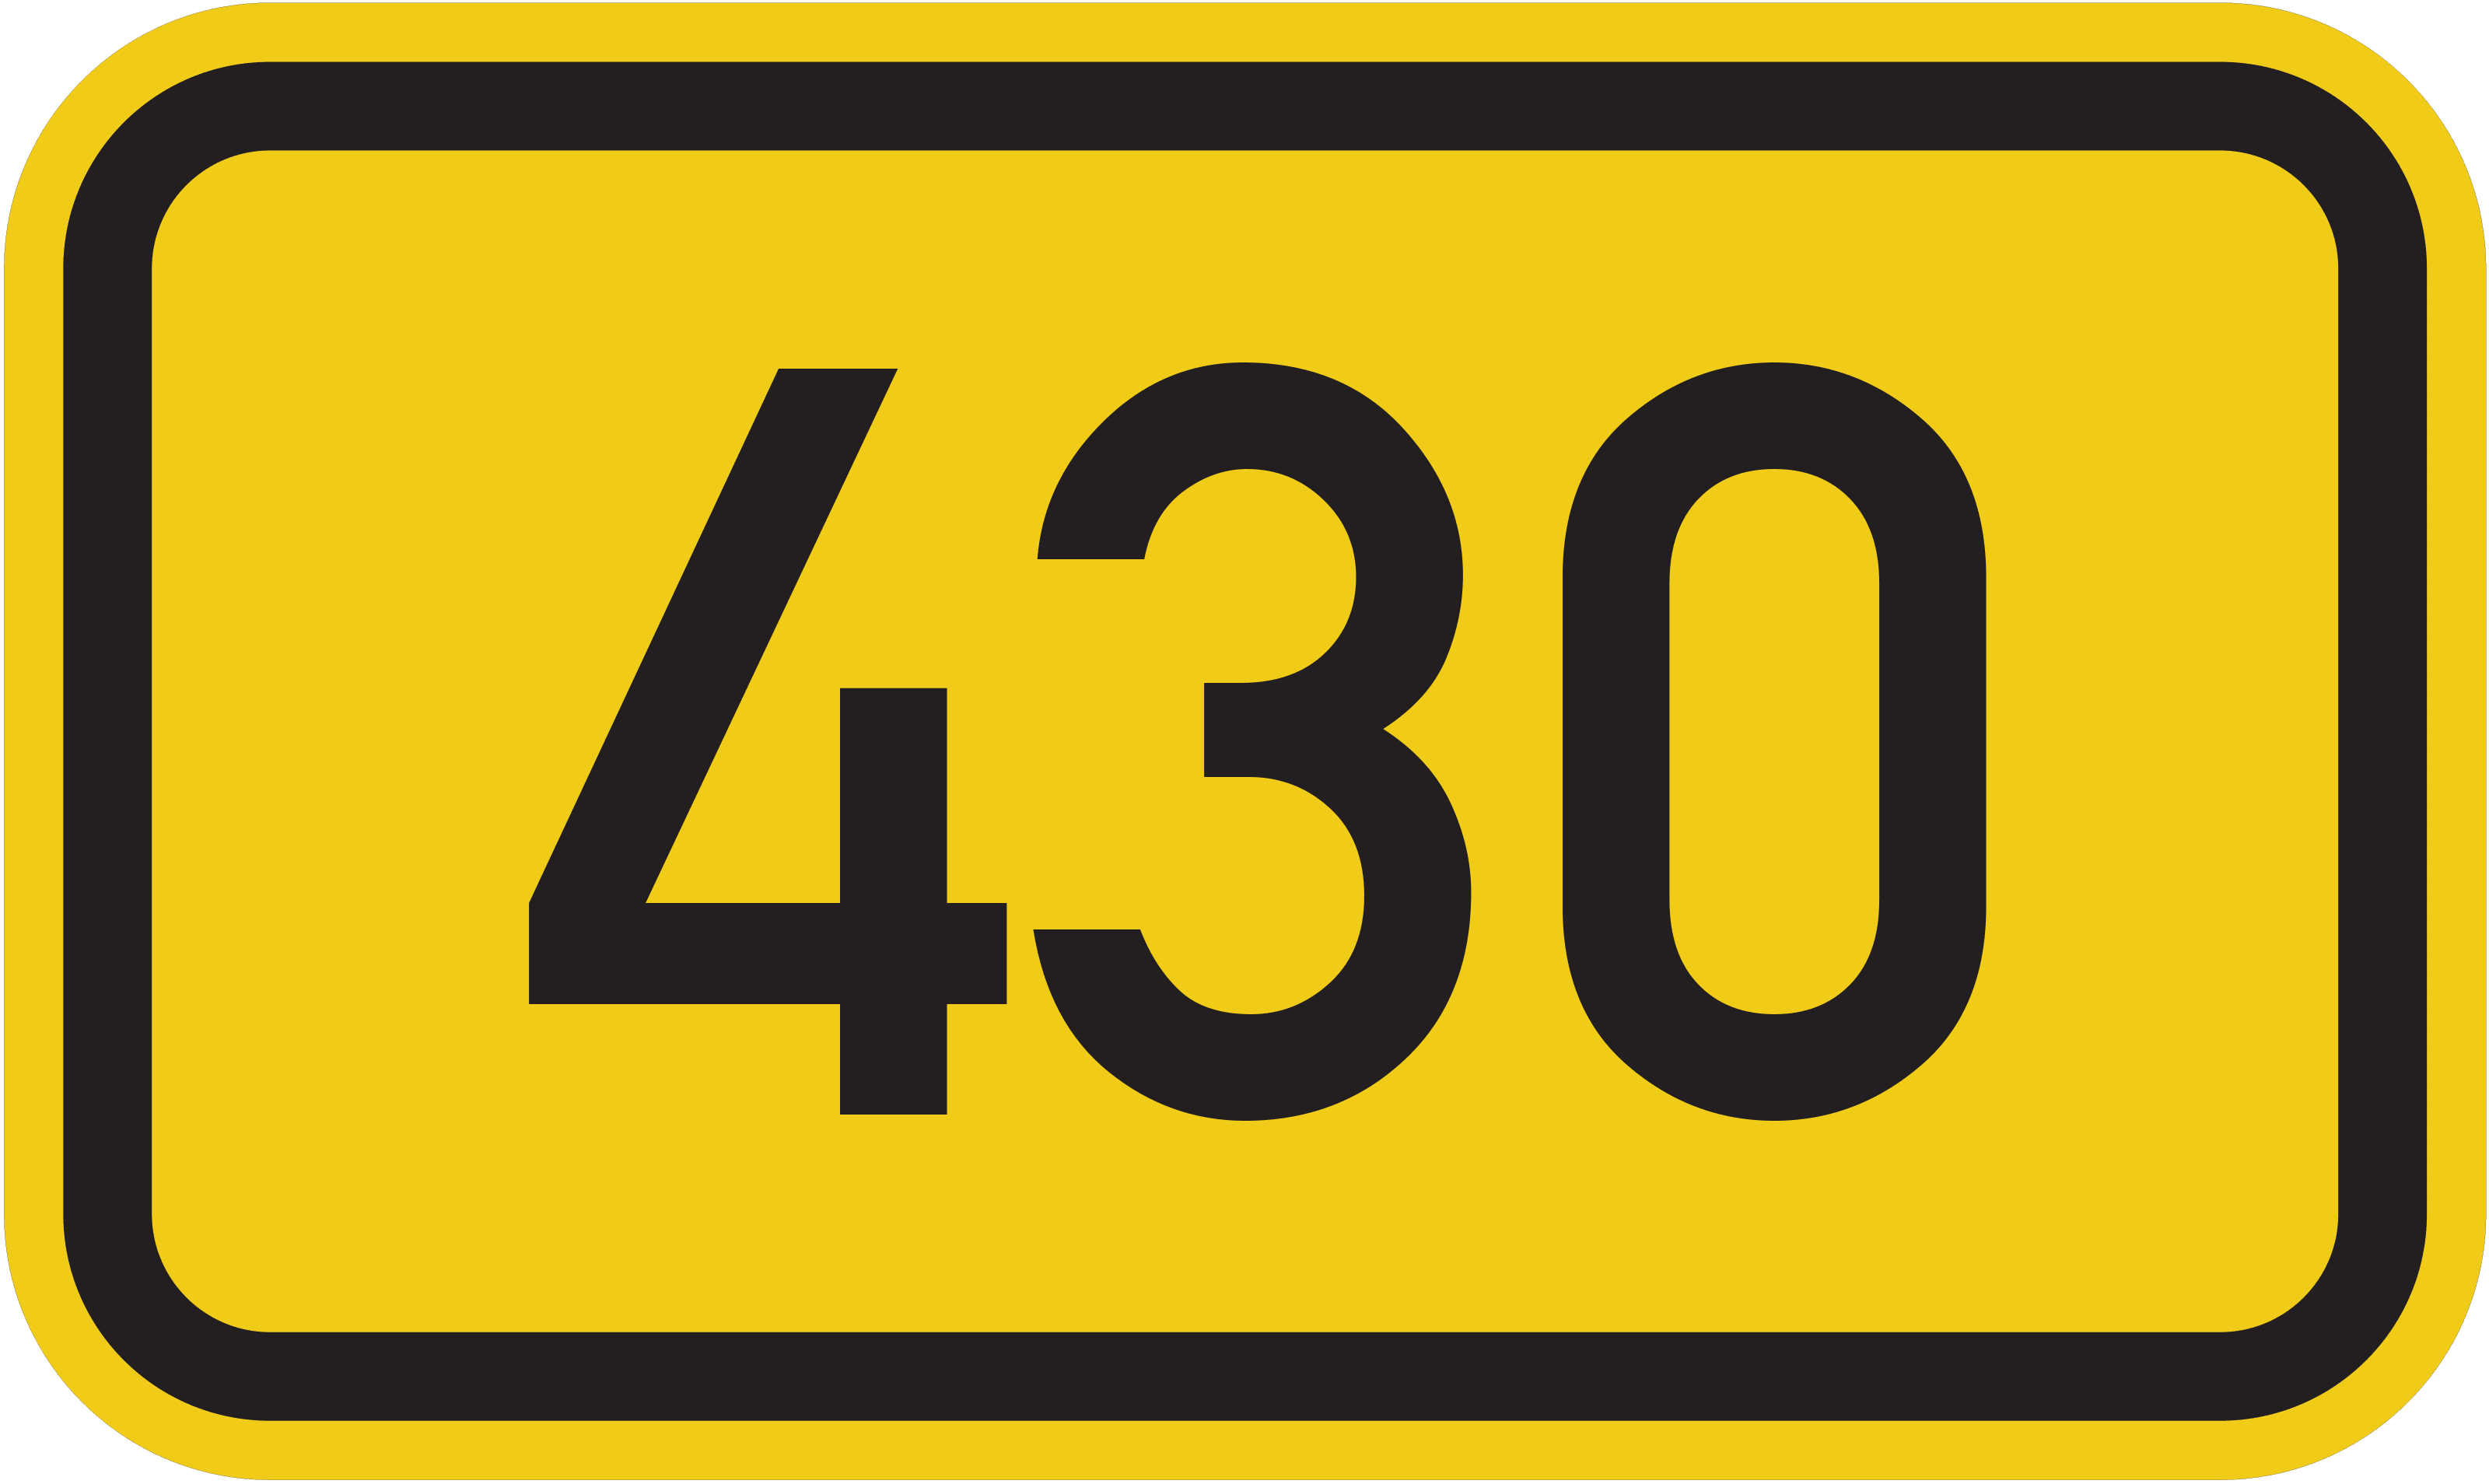 Bundesstraße B 430